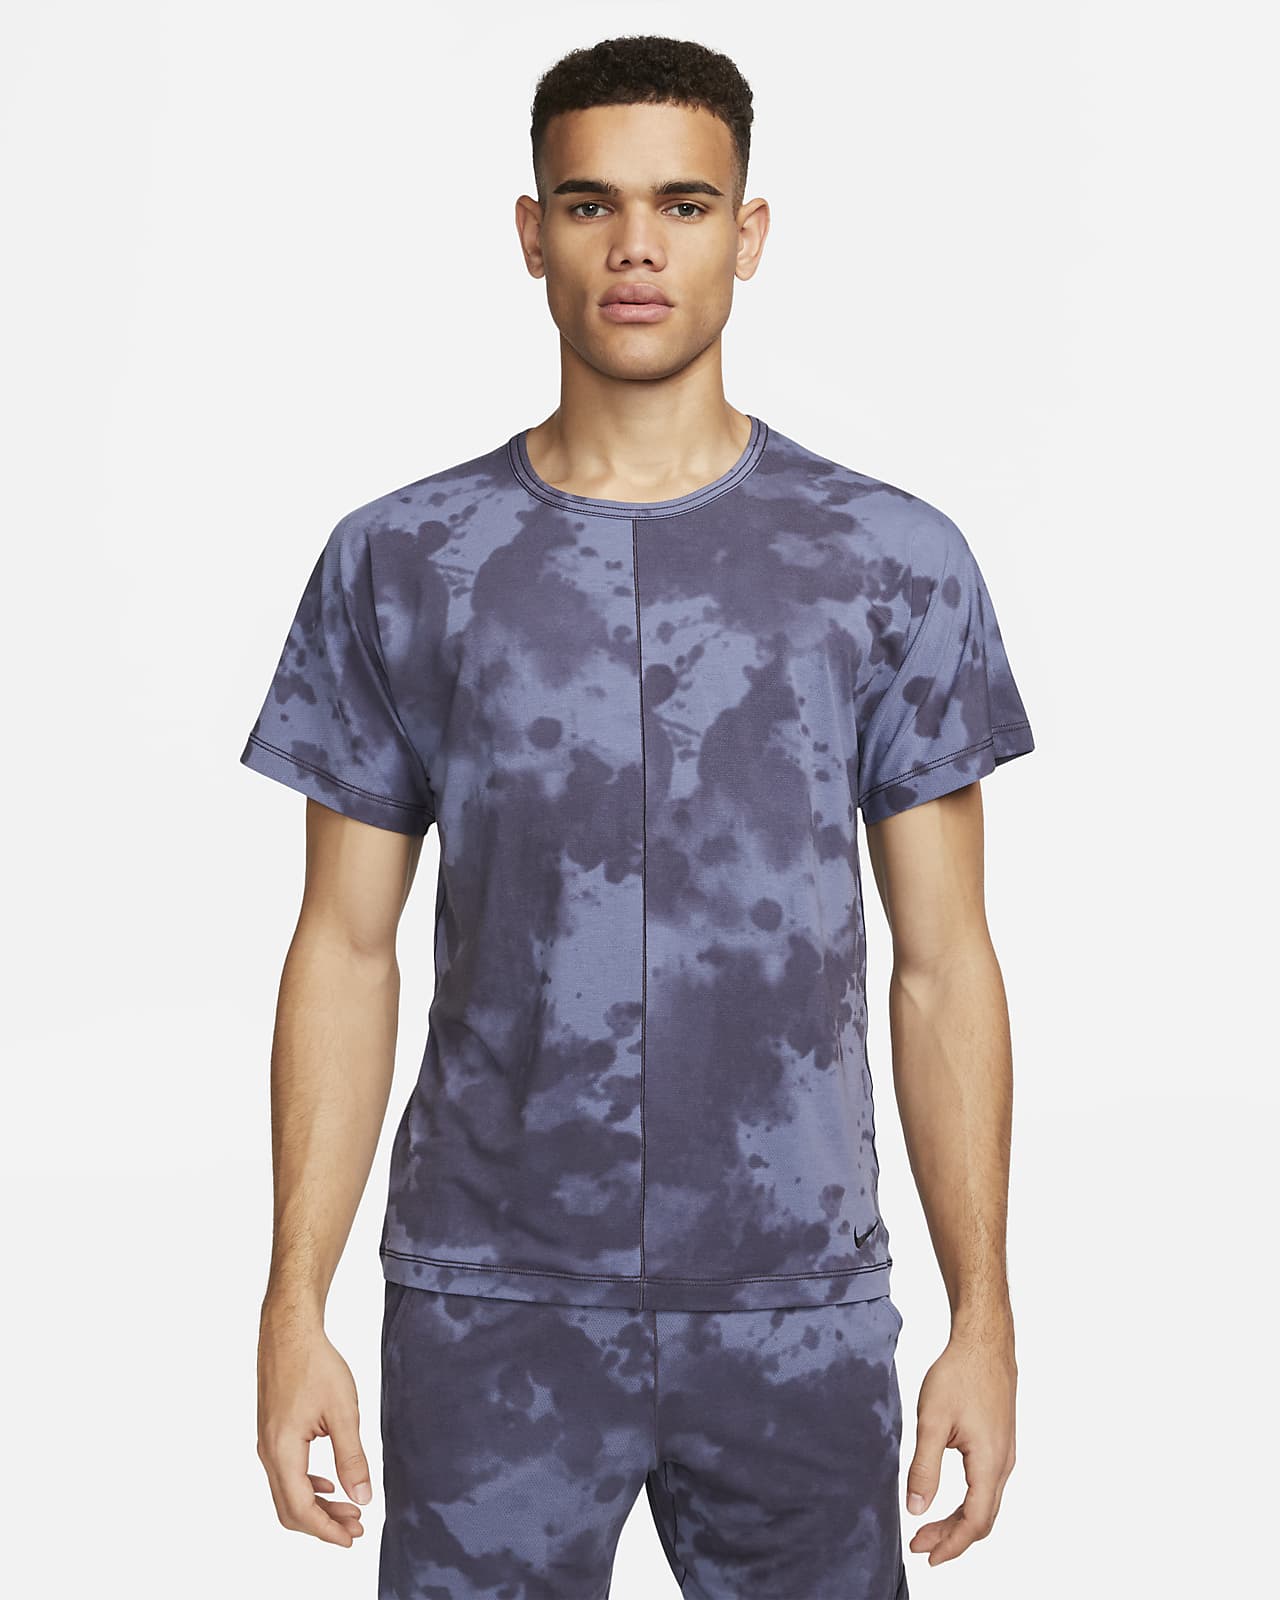 Ανδρική κοντομάνικη μπλούζα γιόγκα με μοτίβο σε όλη την επιφάνεια Nike Dri-FIT